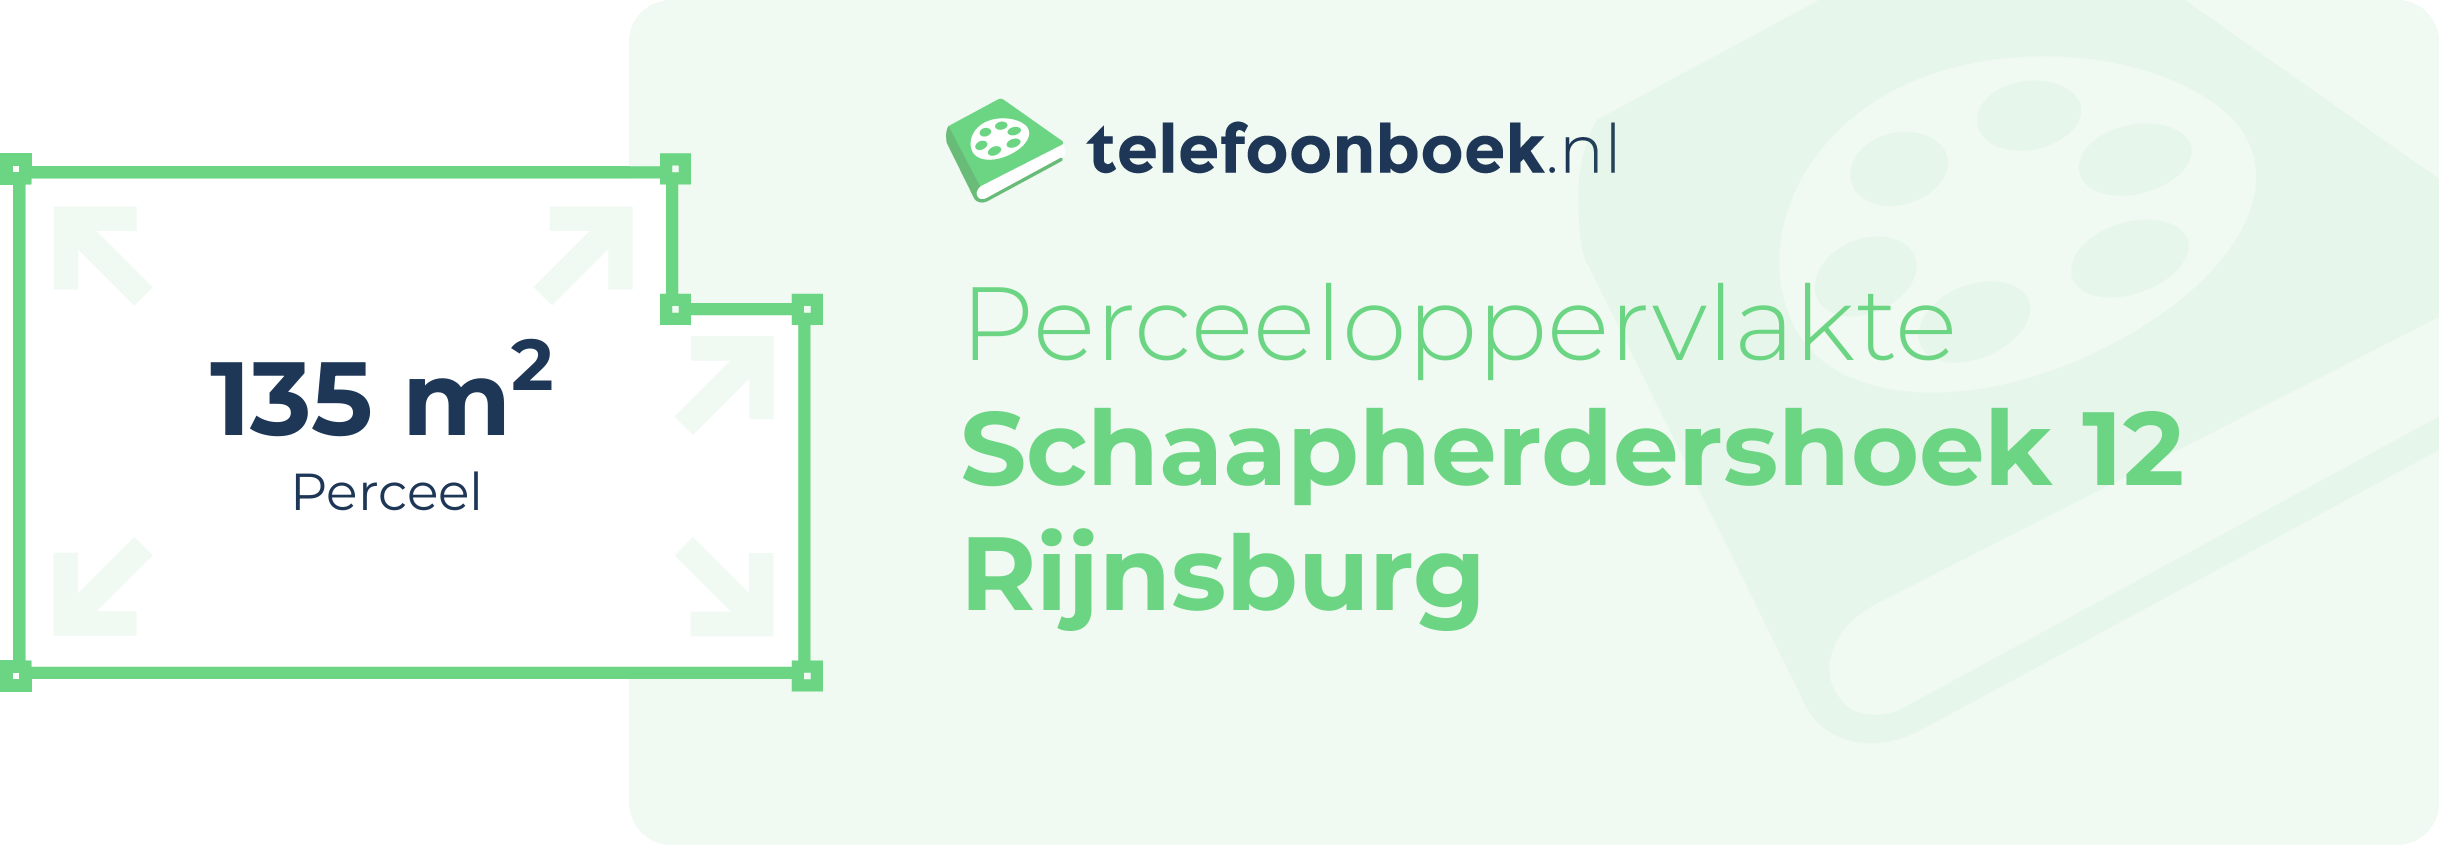 Perceeloppervlakte Schaapherdershoek 12 Rijnsburg